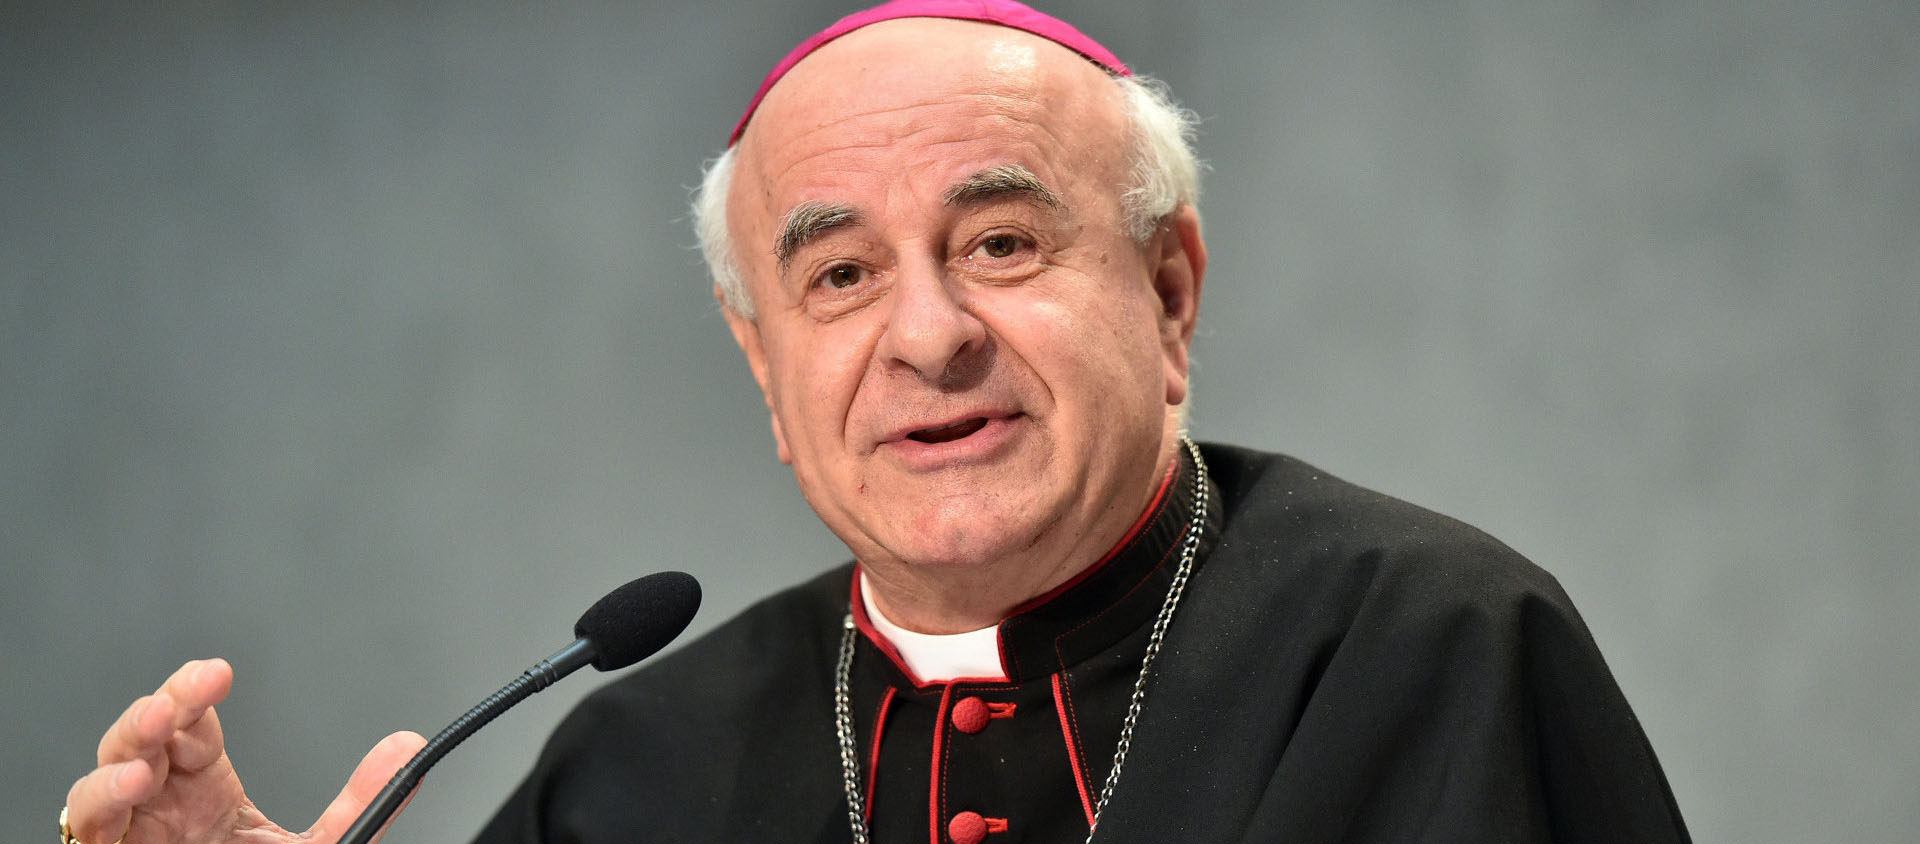 Mgr Vincenzo Paglia est président de l'Académie pontificale pour la vie depuis 2016 | © catt.ch